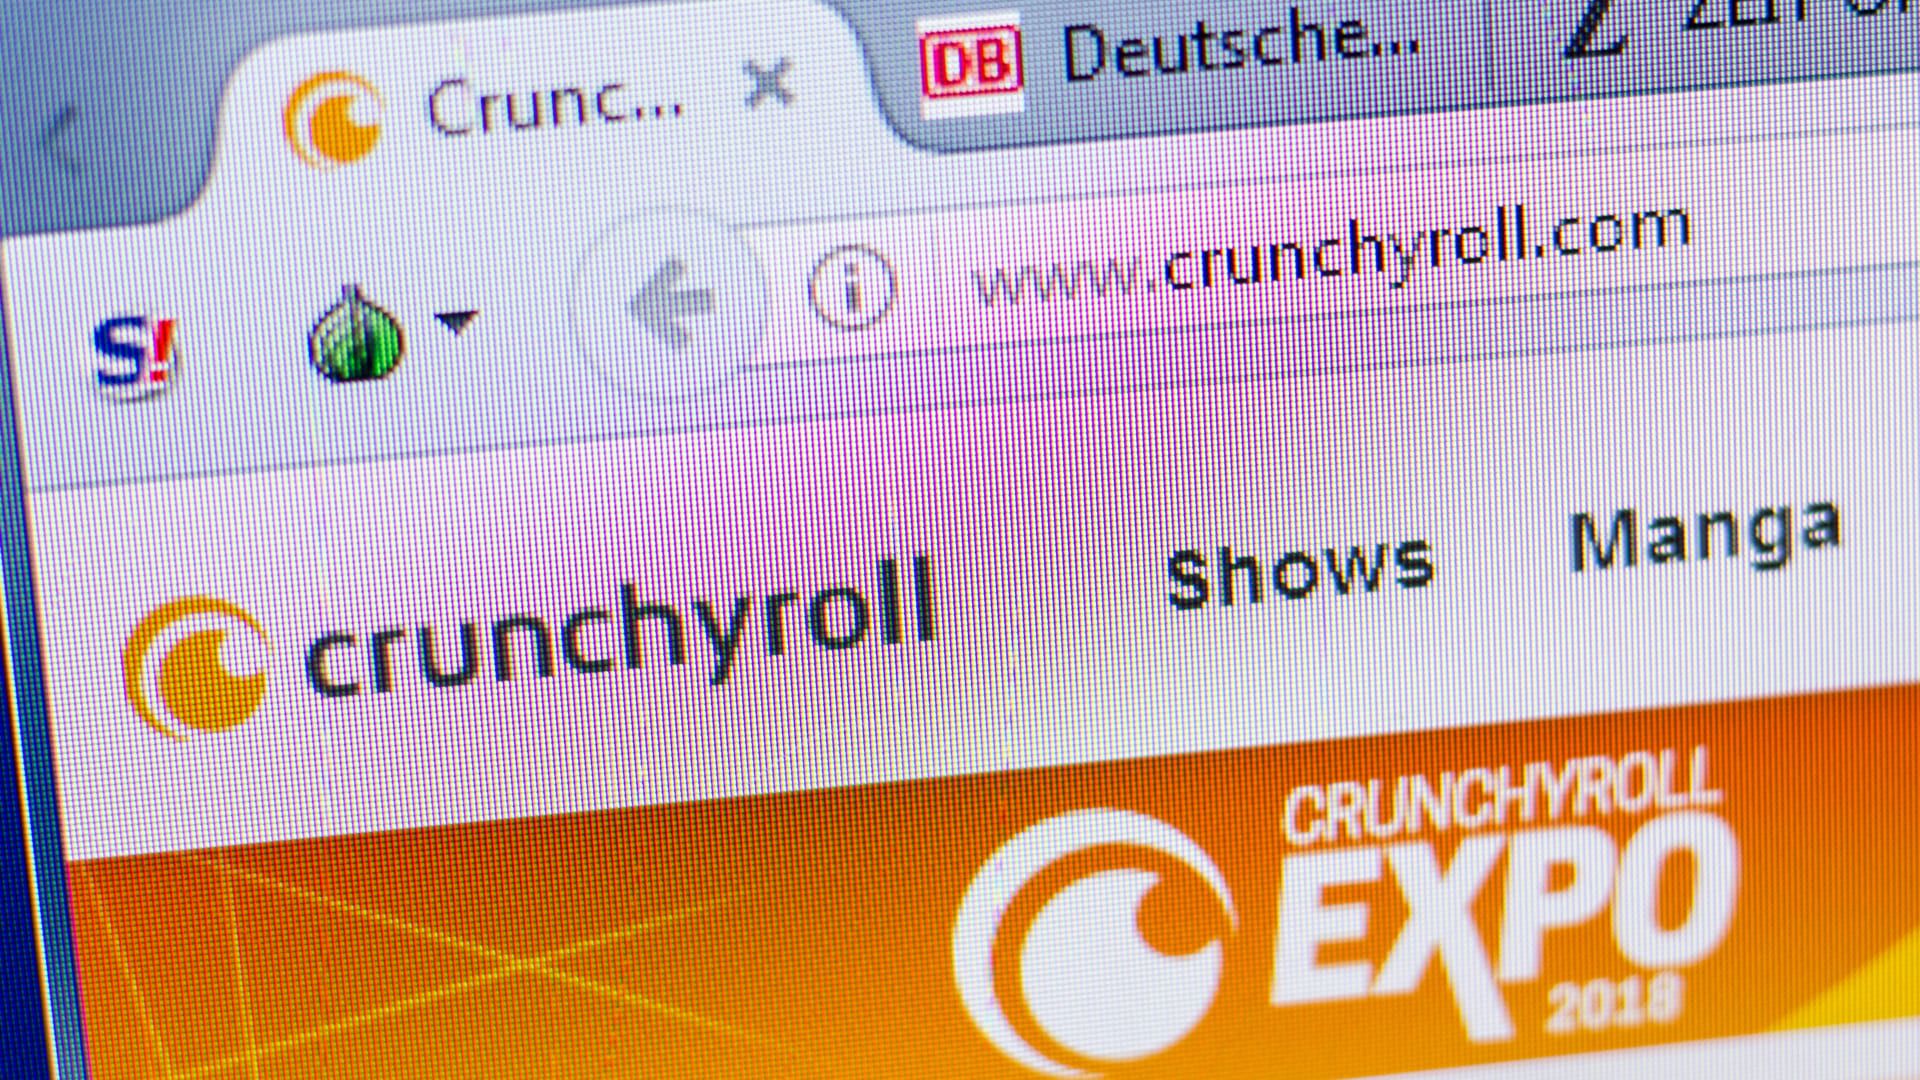 Como assistir Crunchyroll [Dispositivos compatíveis] – Tecnoblog